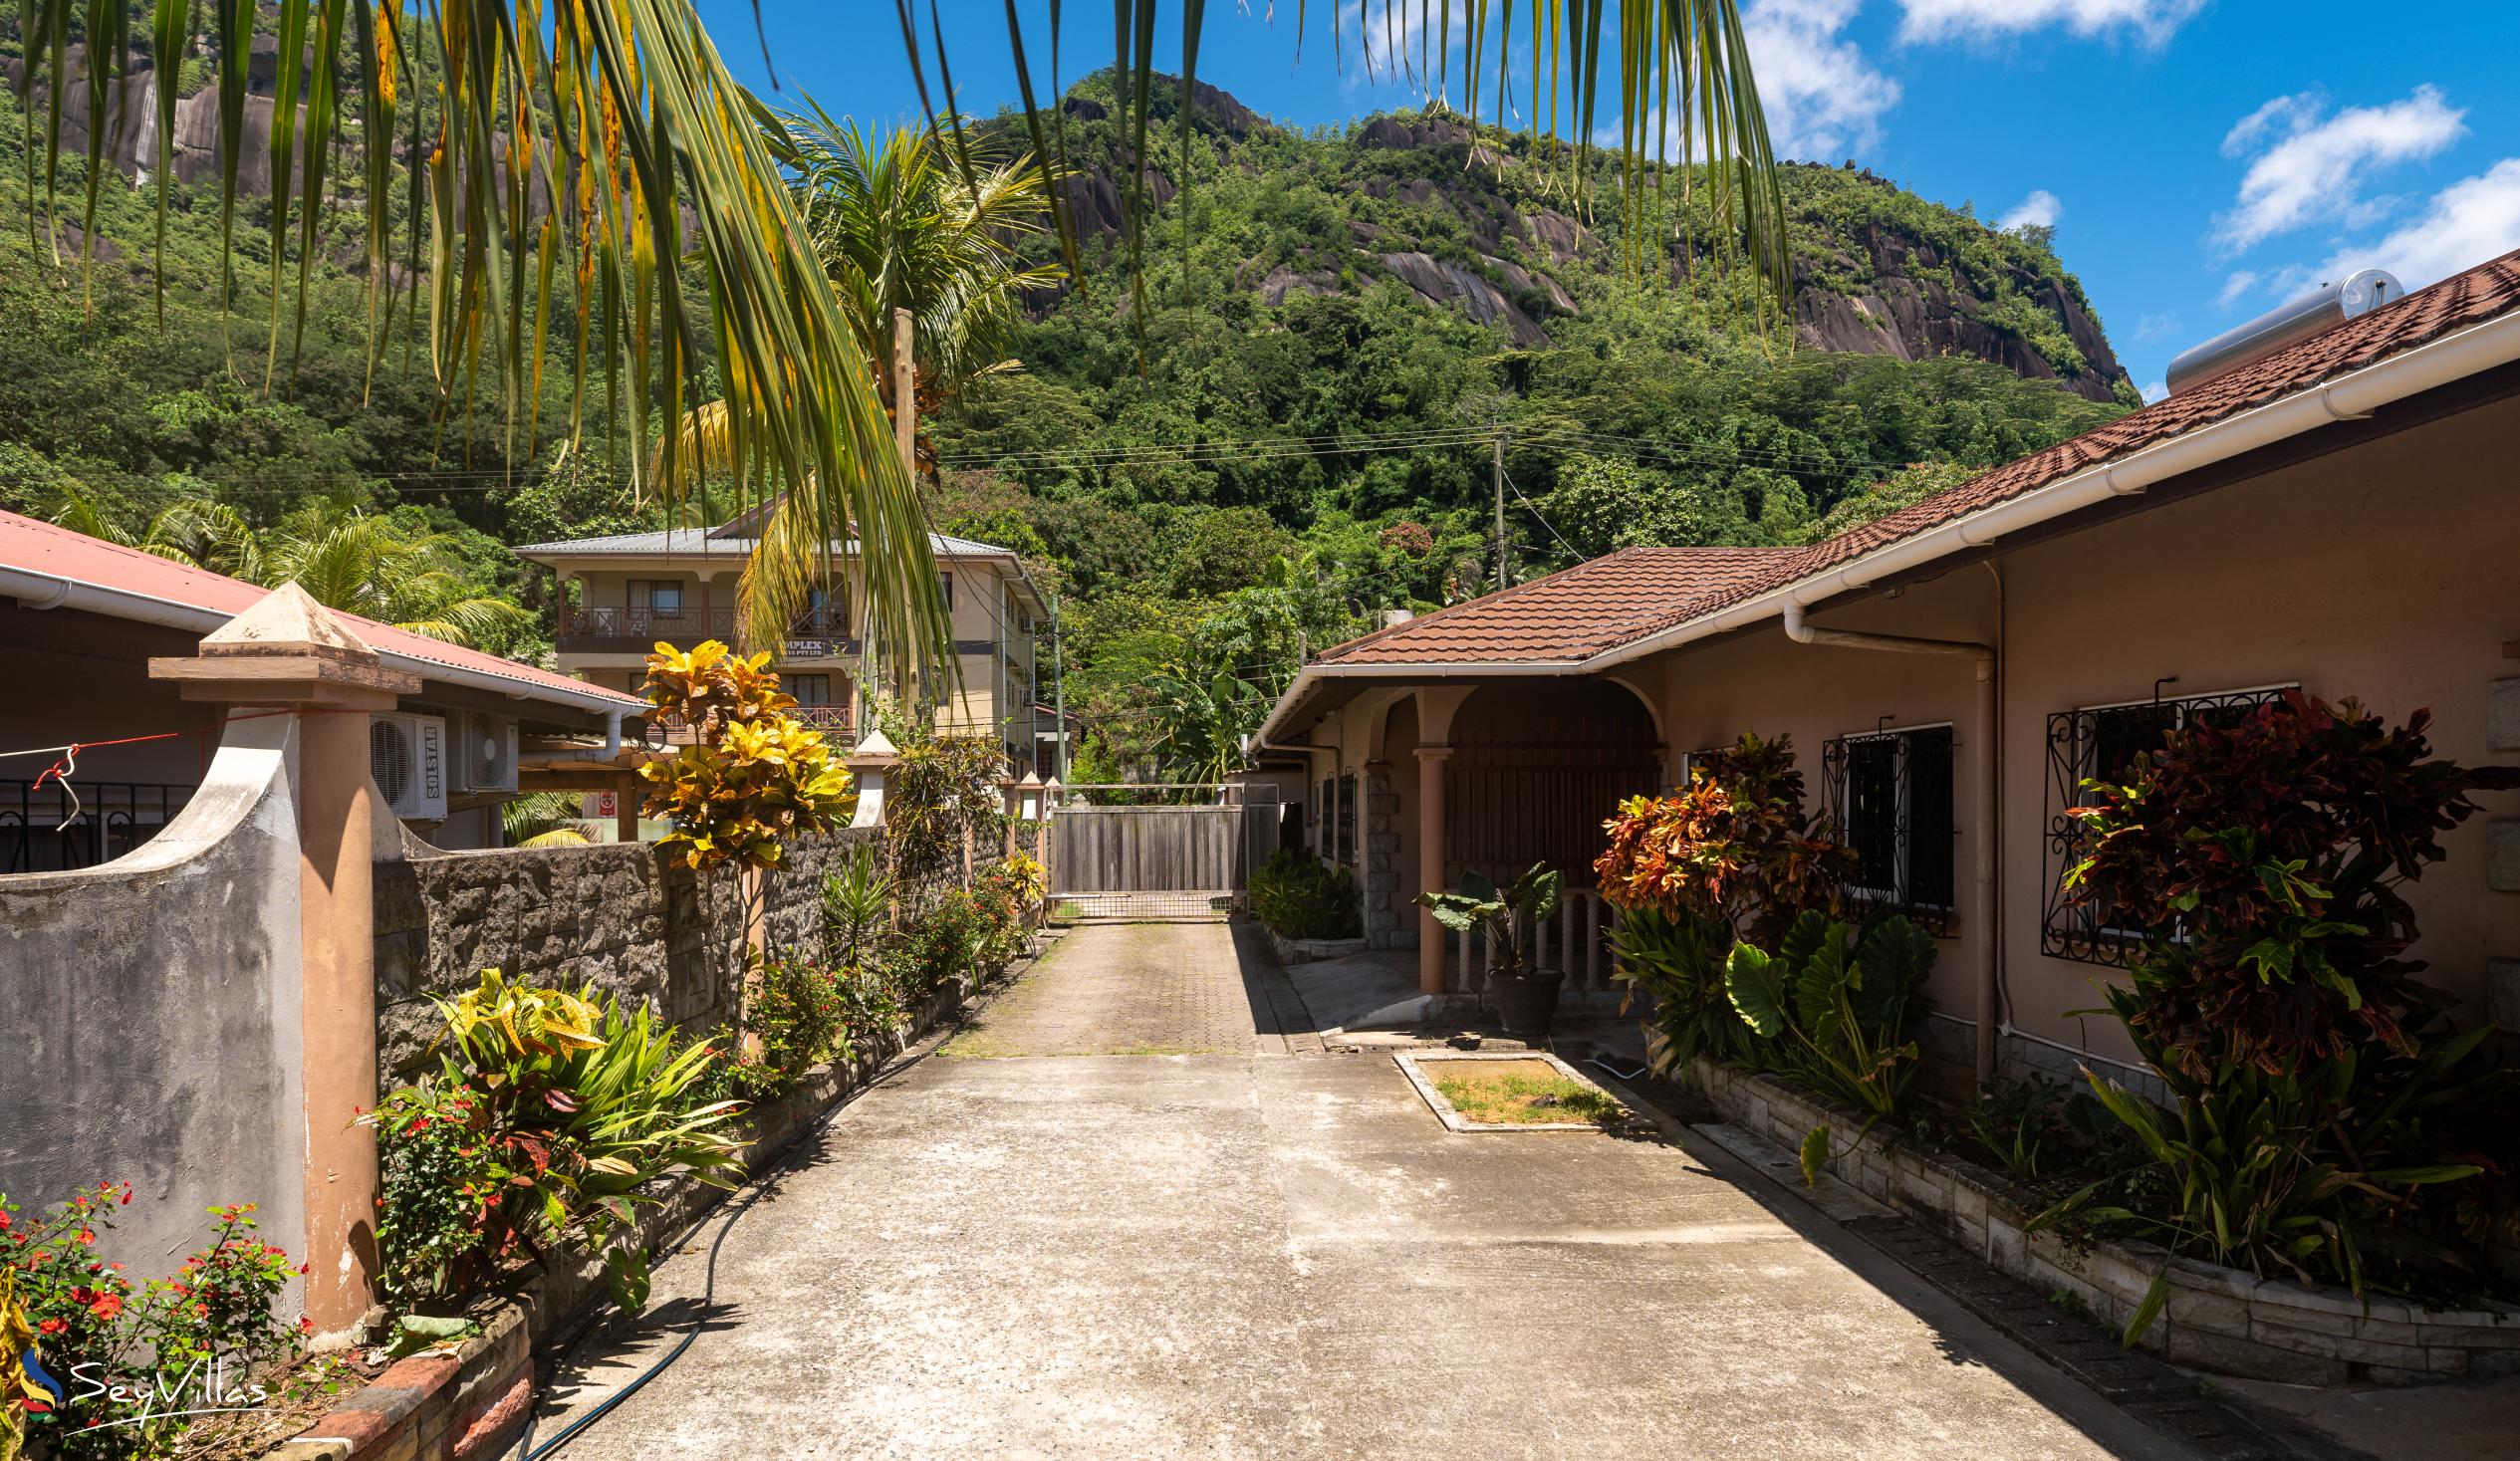 Photo 3: Effie's Mountain View Villas - Outdoor area - Mahé (Seychelles)